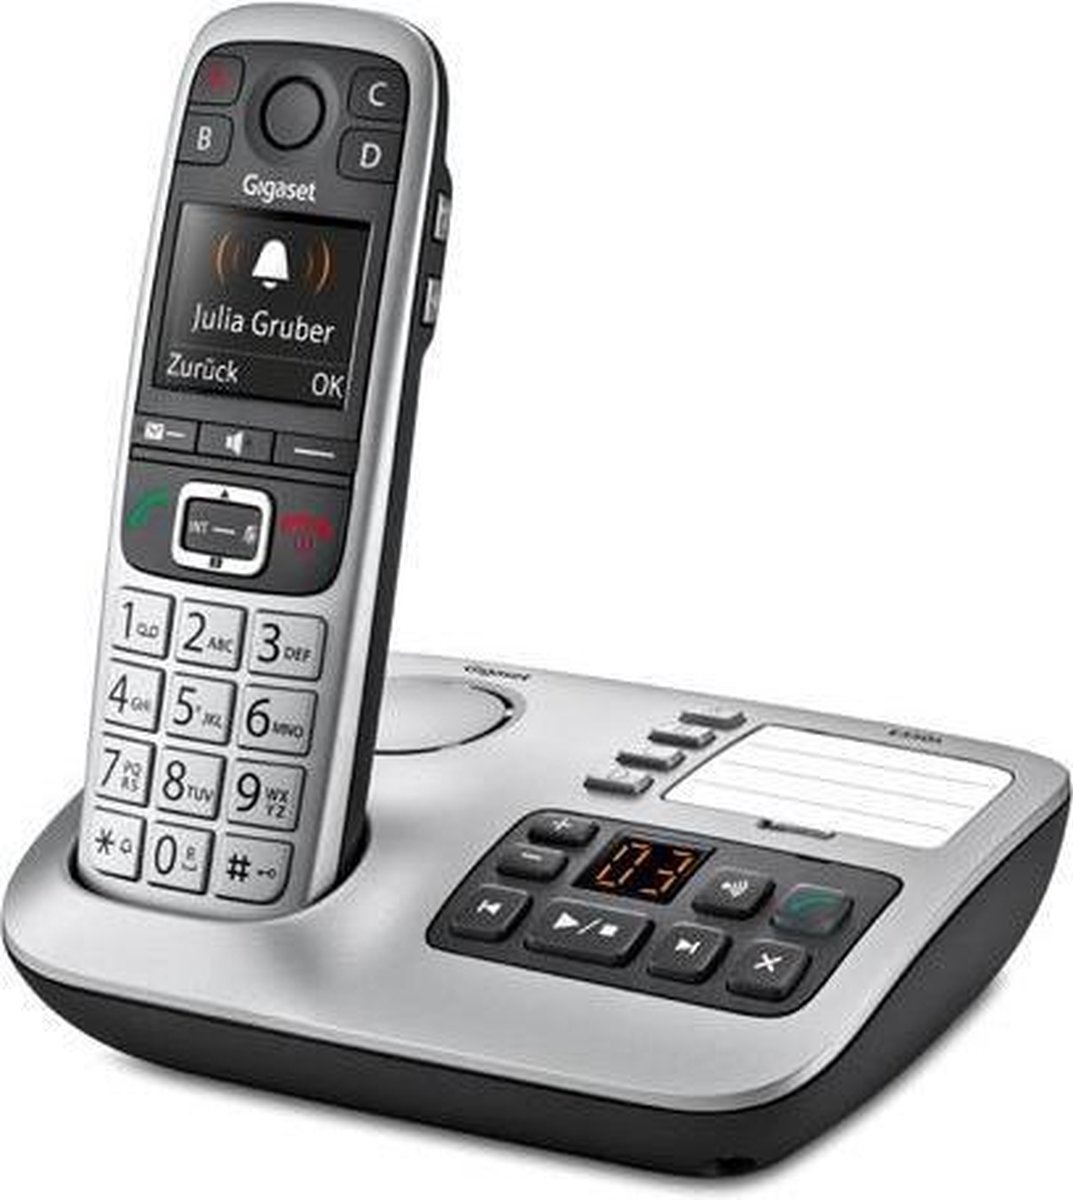 Gigaset A605A Duo - téléphones sans fil avec répondeur - écran